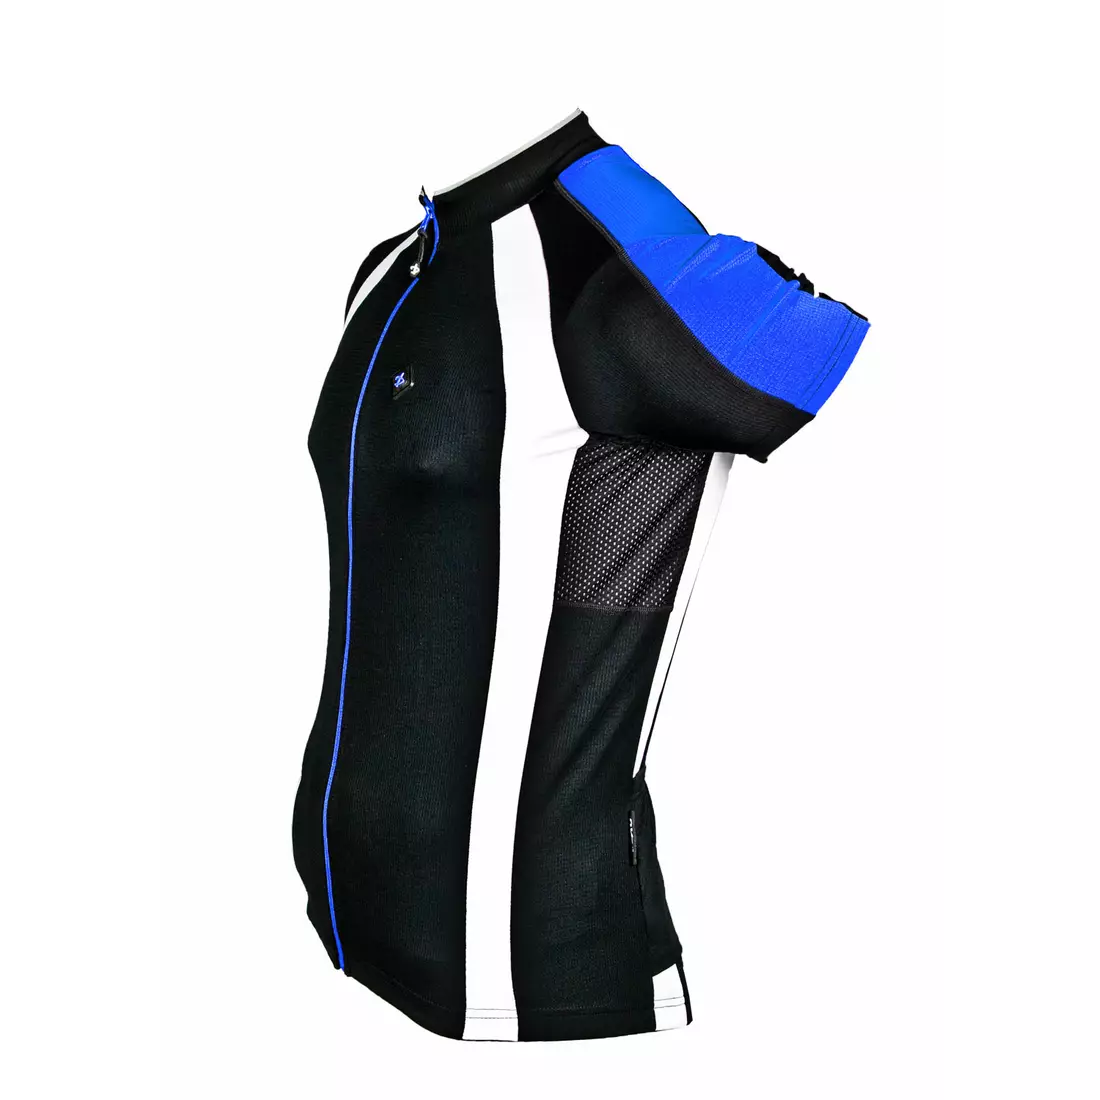 Pánsky cyklistický dres DEKO AIR X2 čierno-modrý